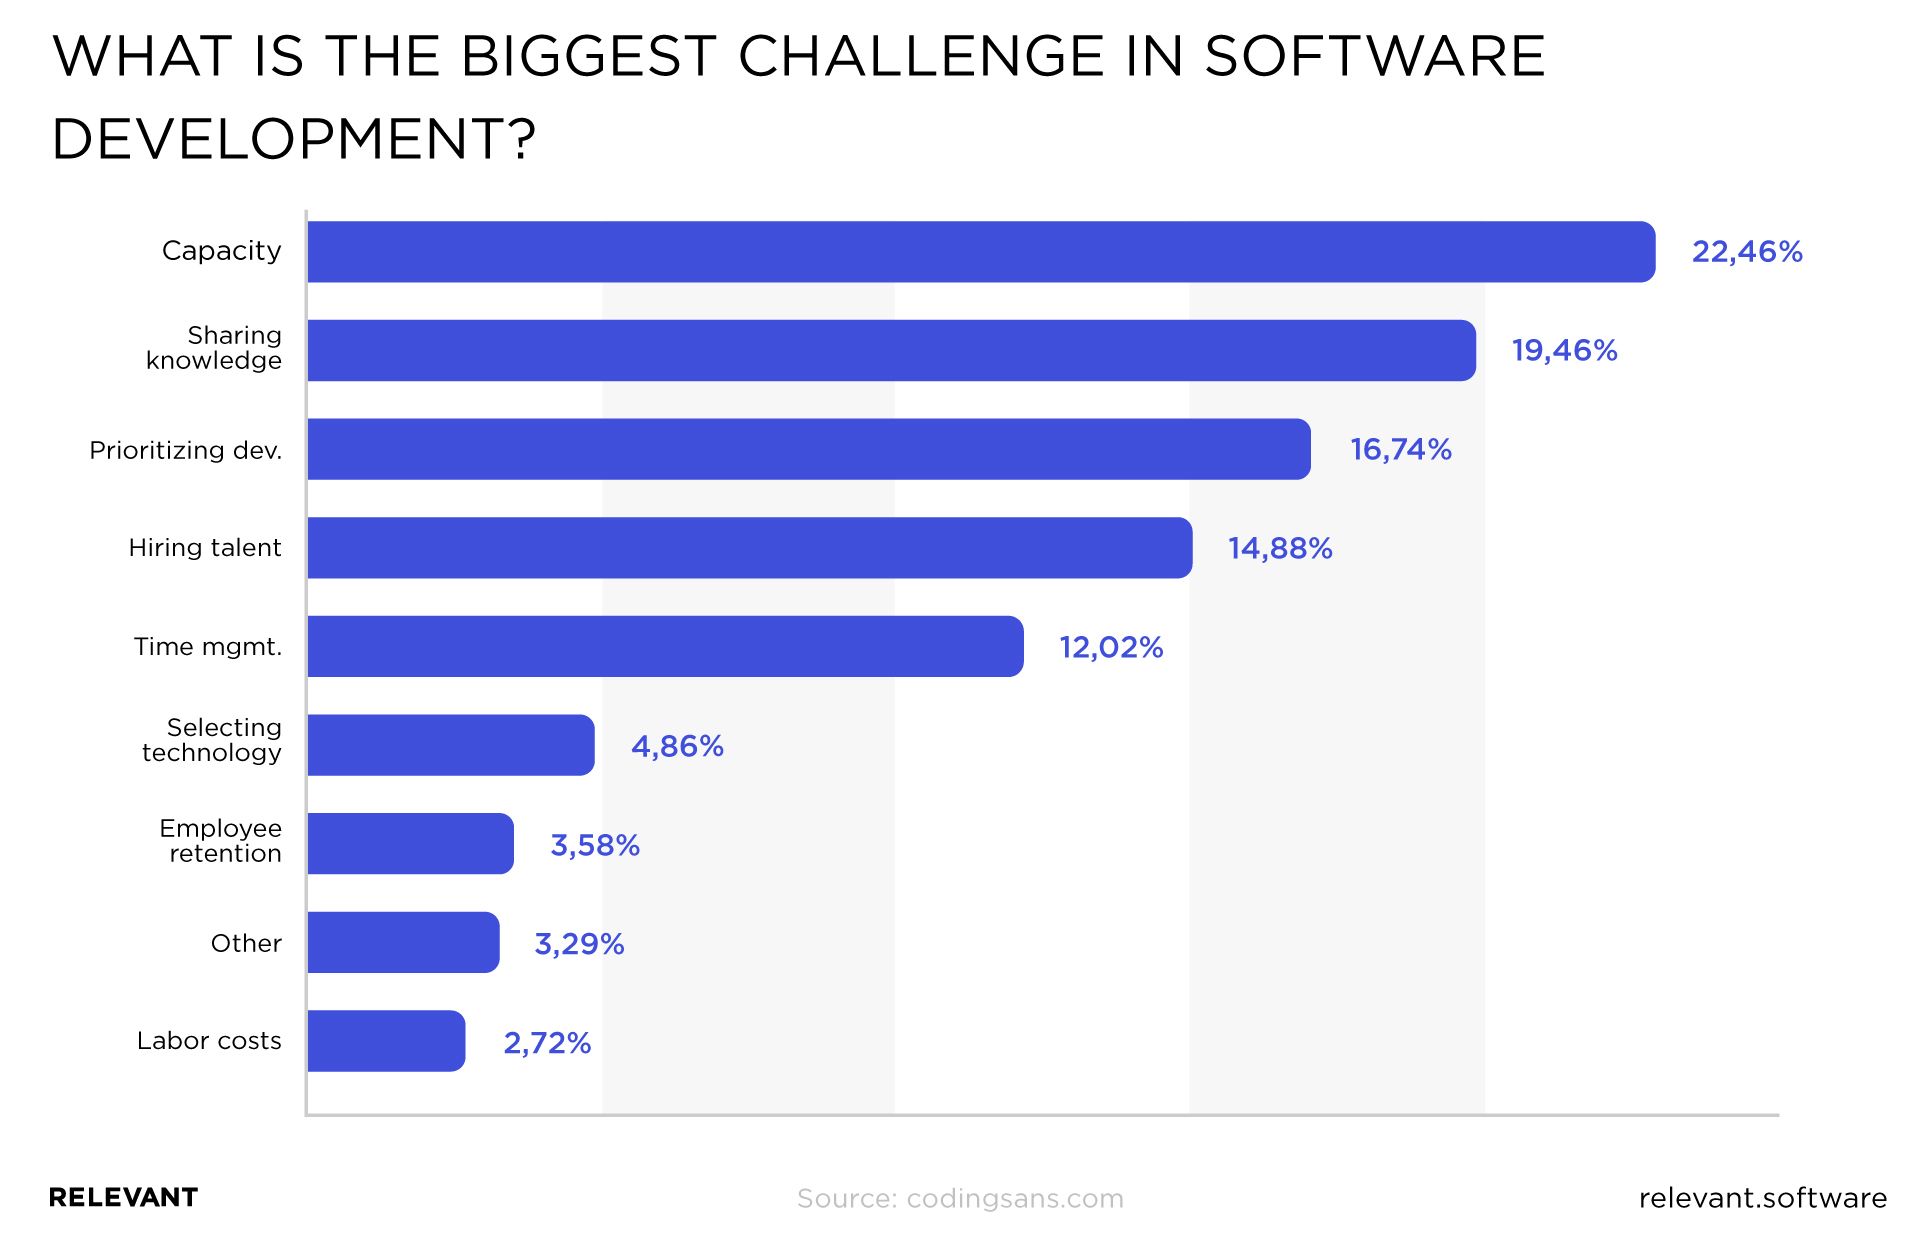 信息图显示软件开发中大的挑战是容量